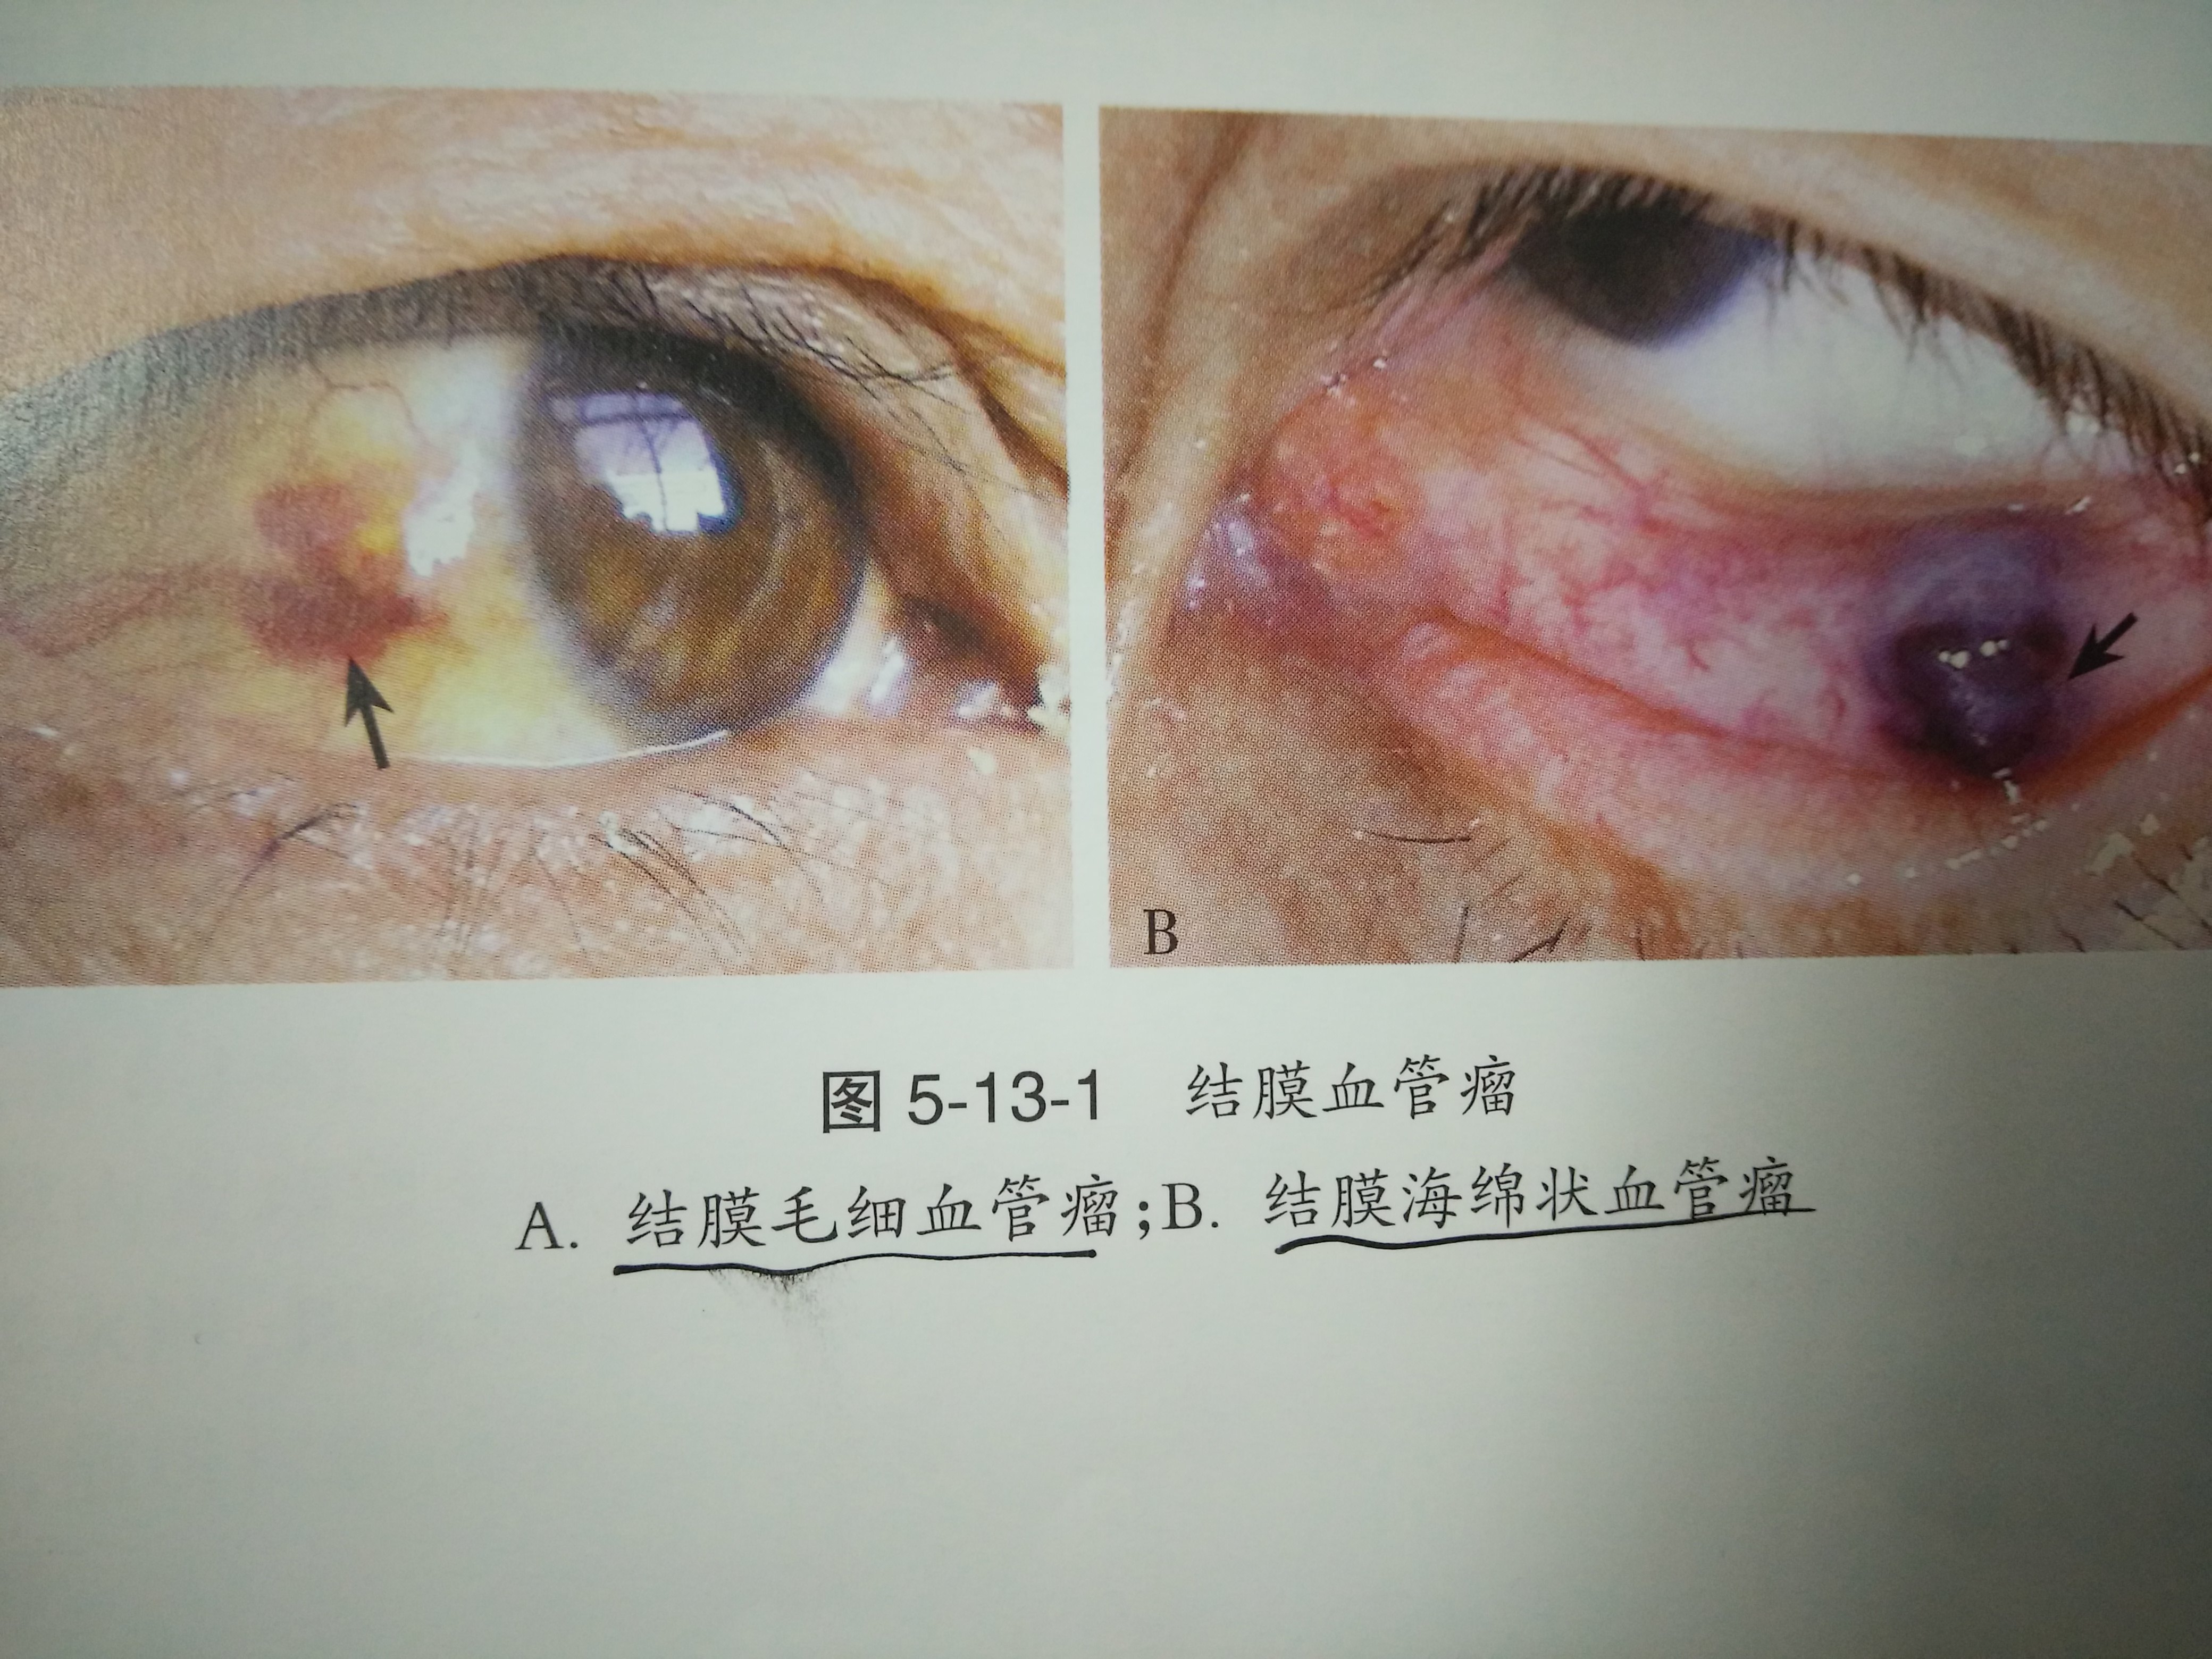 图1-7 鳞屑性眼睑炎-眼前节疾病-医学